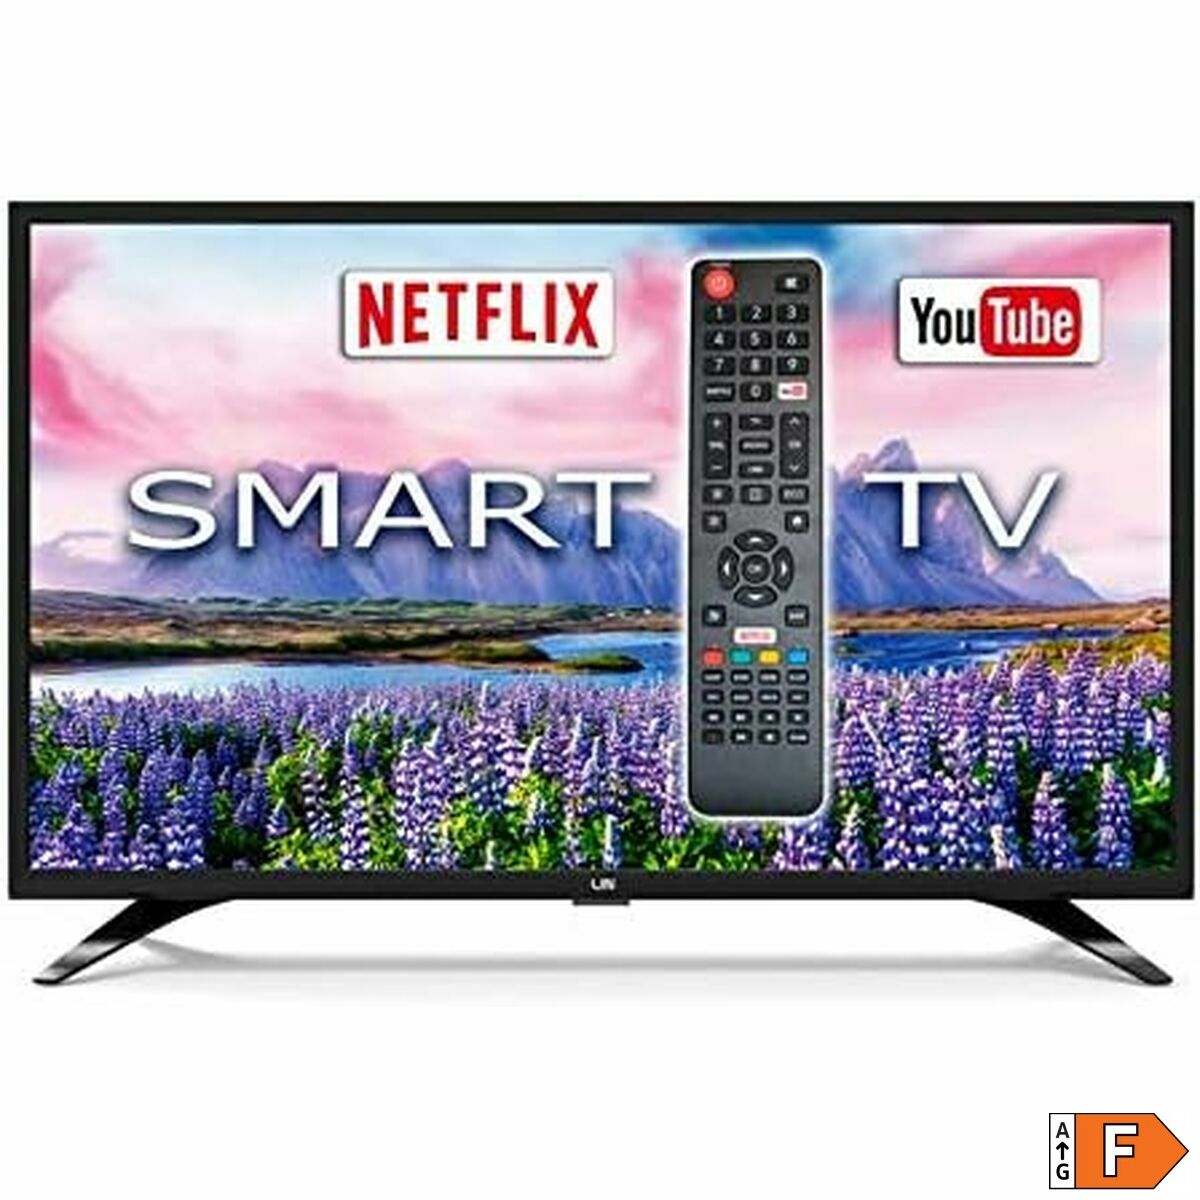 Smart Tv Lin 32d1700 32"